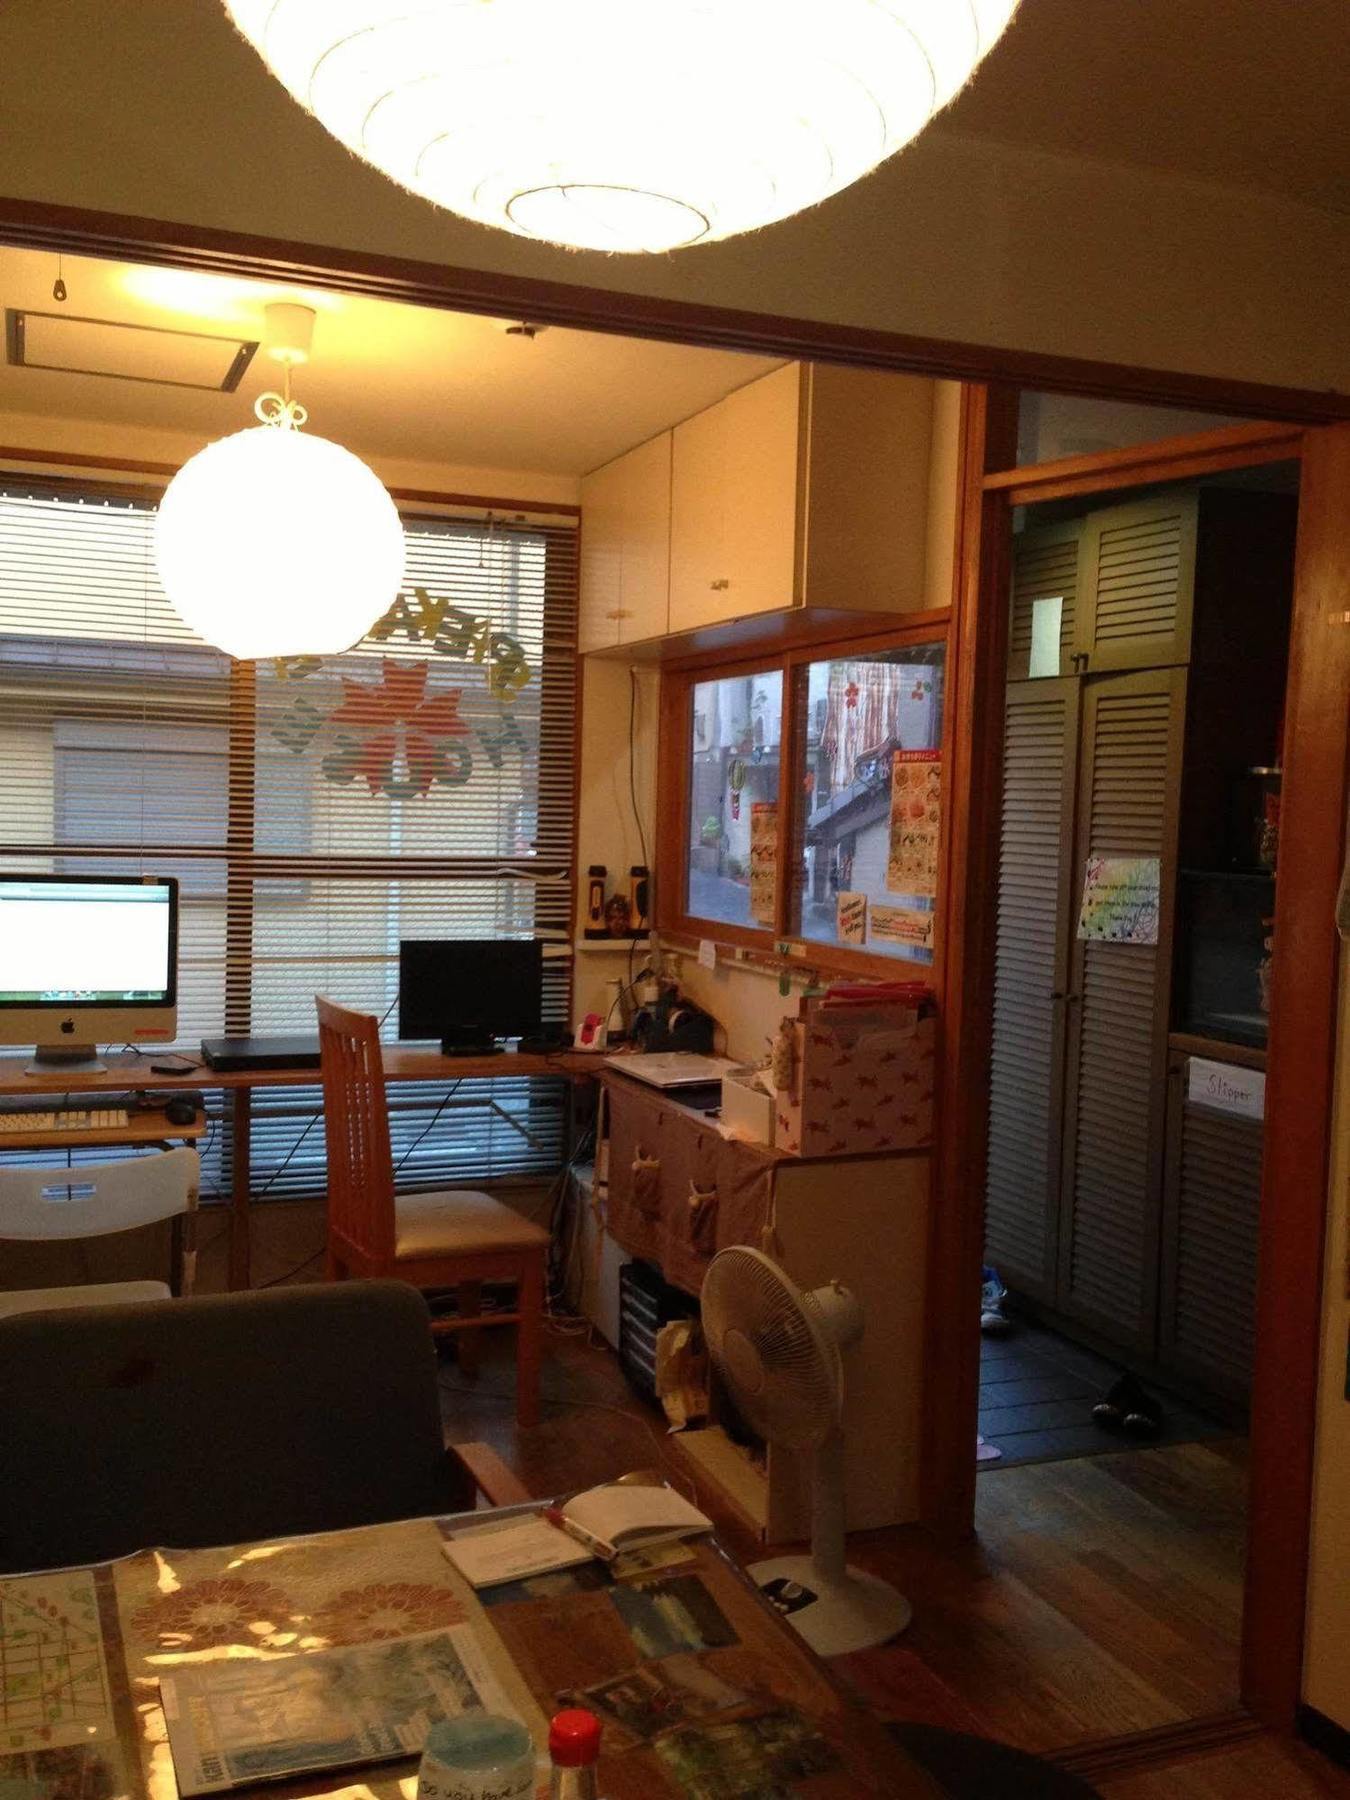 הוסטל קיוטו Peace House Sakura מראה חיצוני תמונה